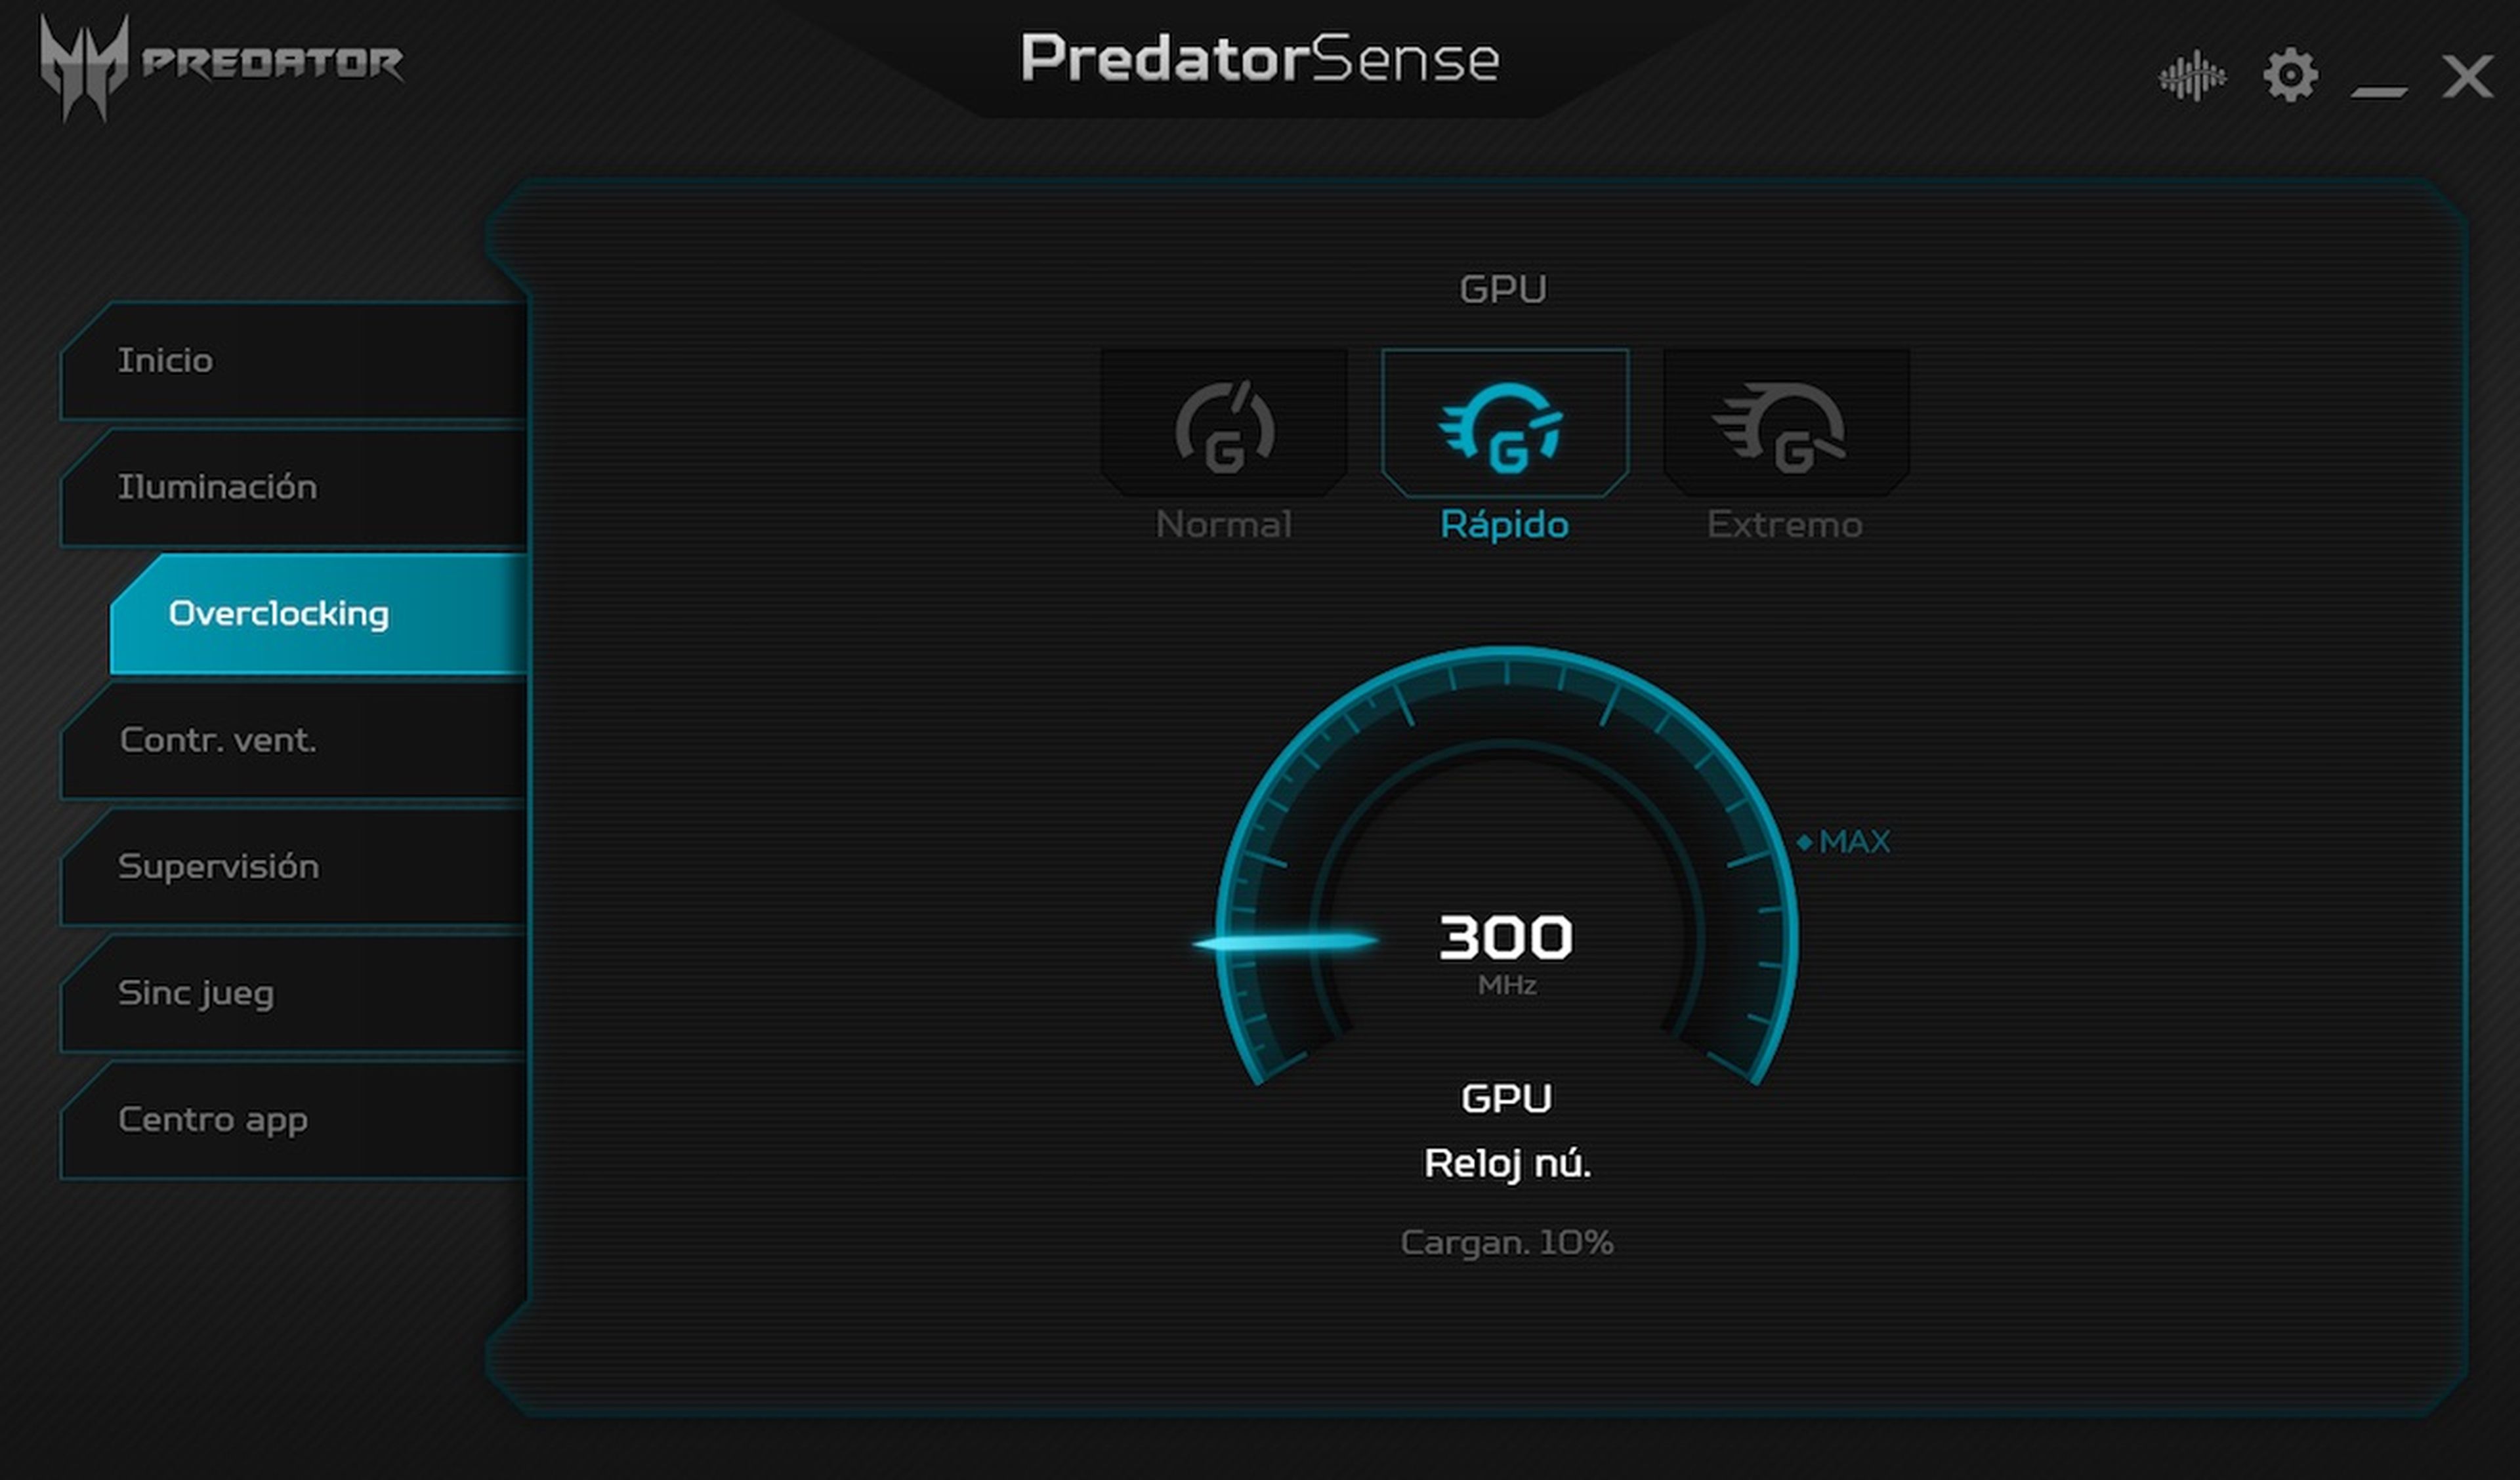 Predator Sense Triton 500